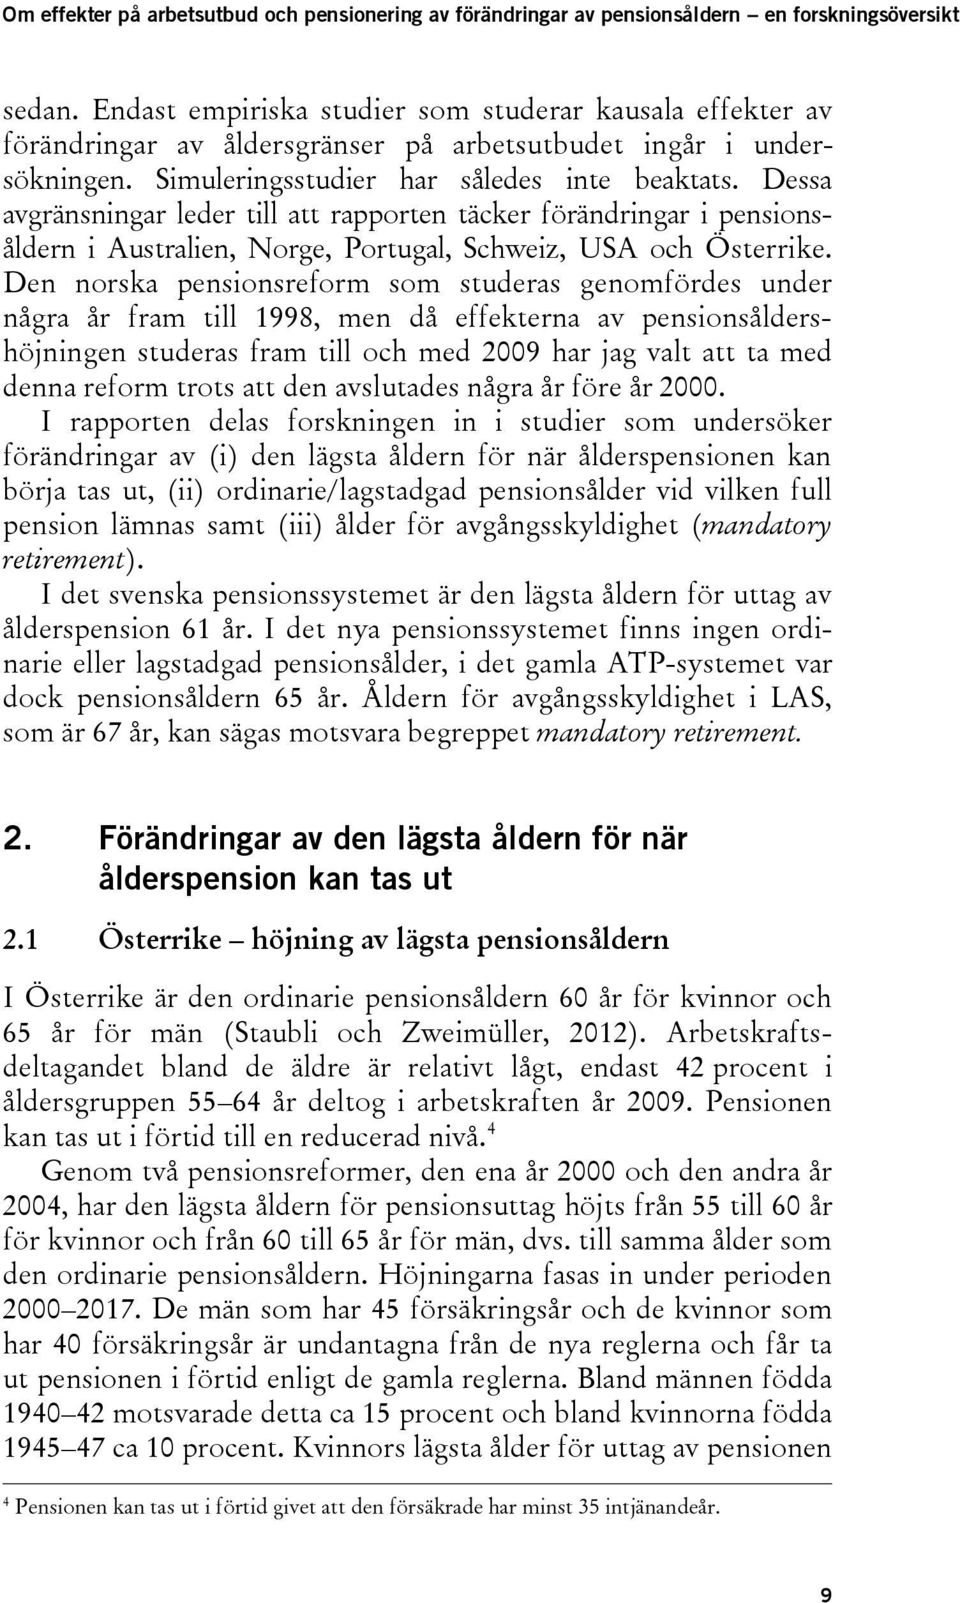 Den norska pensionsreform som studeras genomfördes under några år fram till 1998, men då effekterna av pensionsåldershöjningen studeras fram till och med 2009 har jag valt att ta med denna reform